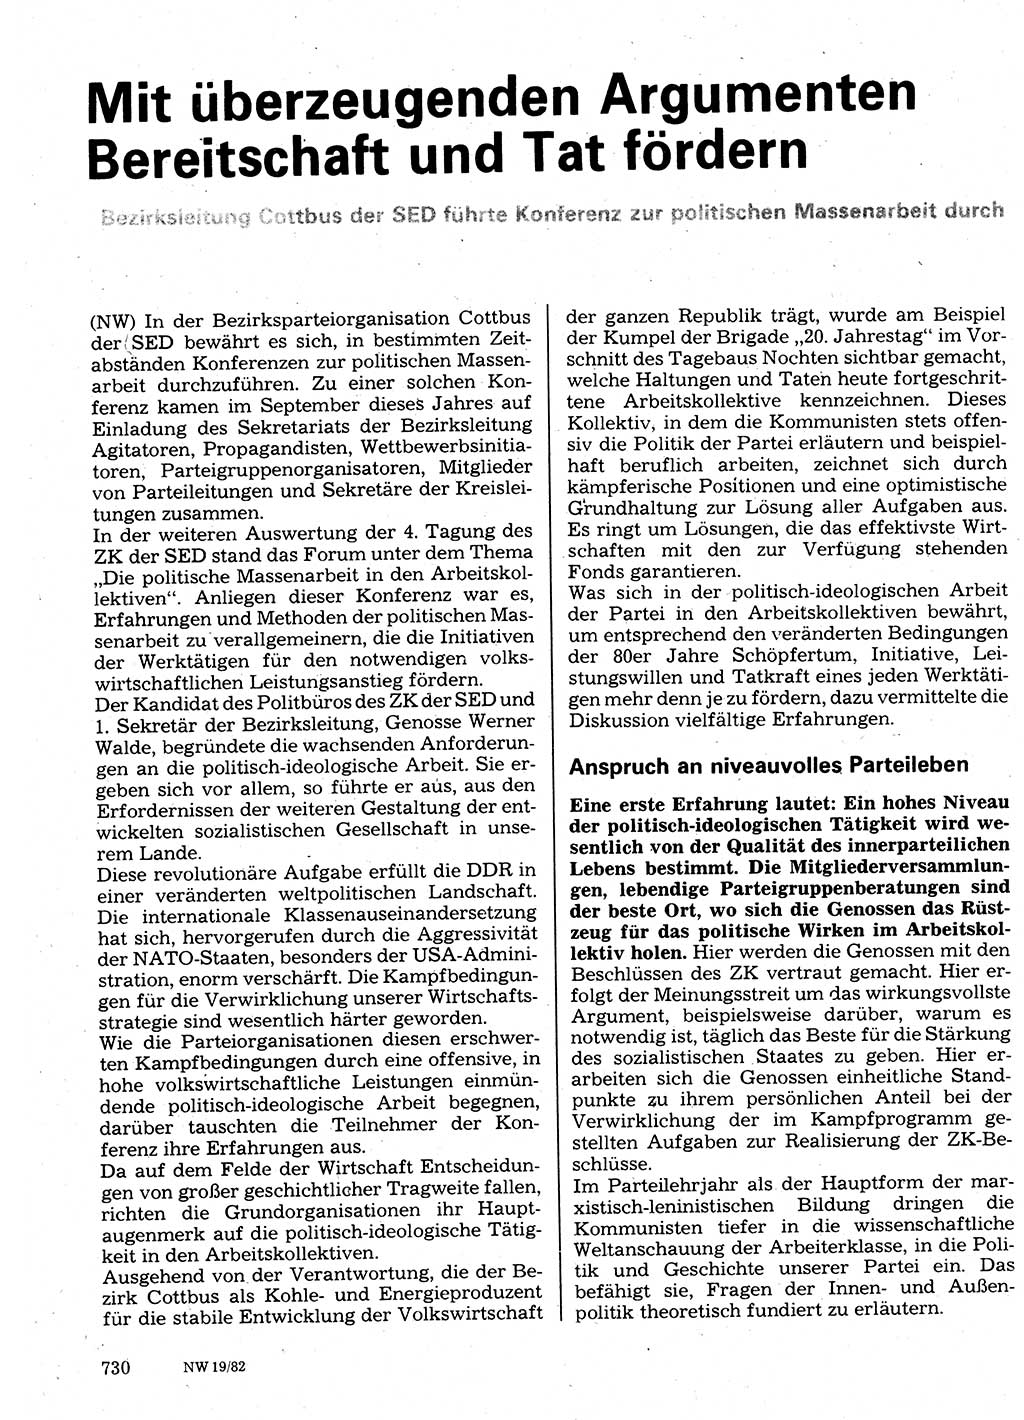 Neuer Weg (NW), Organ des Zentralkomitees (ZK) der SED (Sozialistische Einheitspartei Deutschlands) für Fragen des Parteilebens, 37. Jahrgang [Deutsche Demokratische Republik (DDR)] 1982, Seite 730 (NW ZK SED DDR 1982, S. 730)